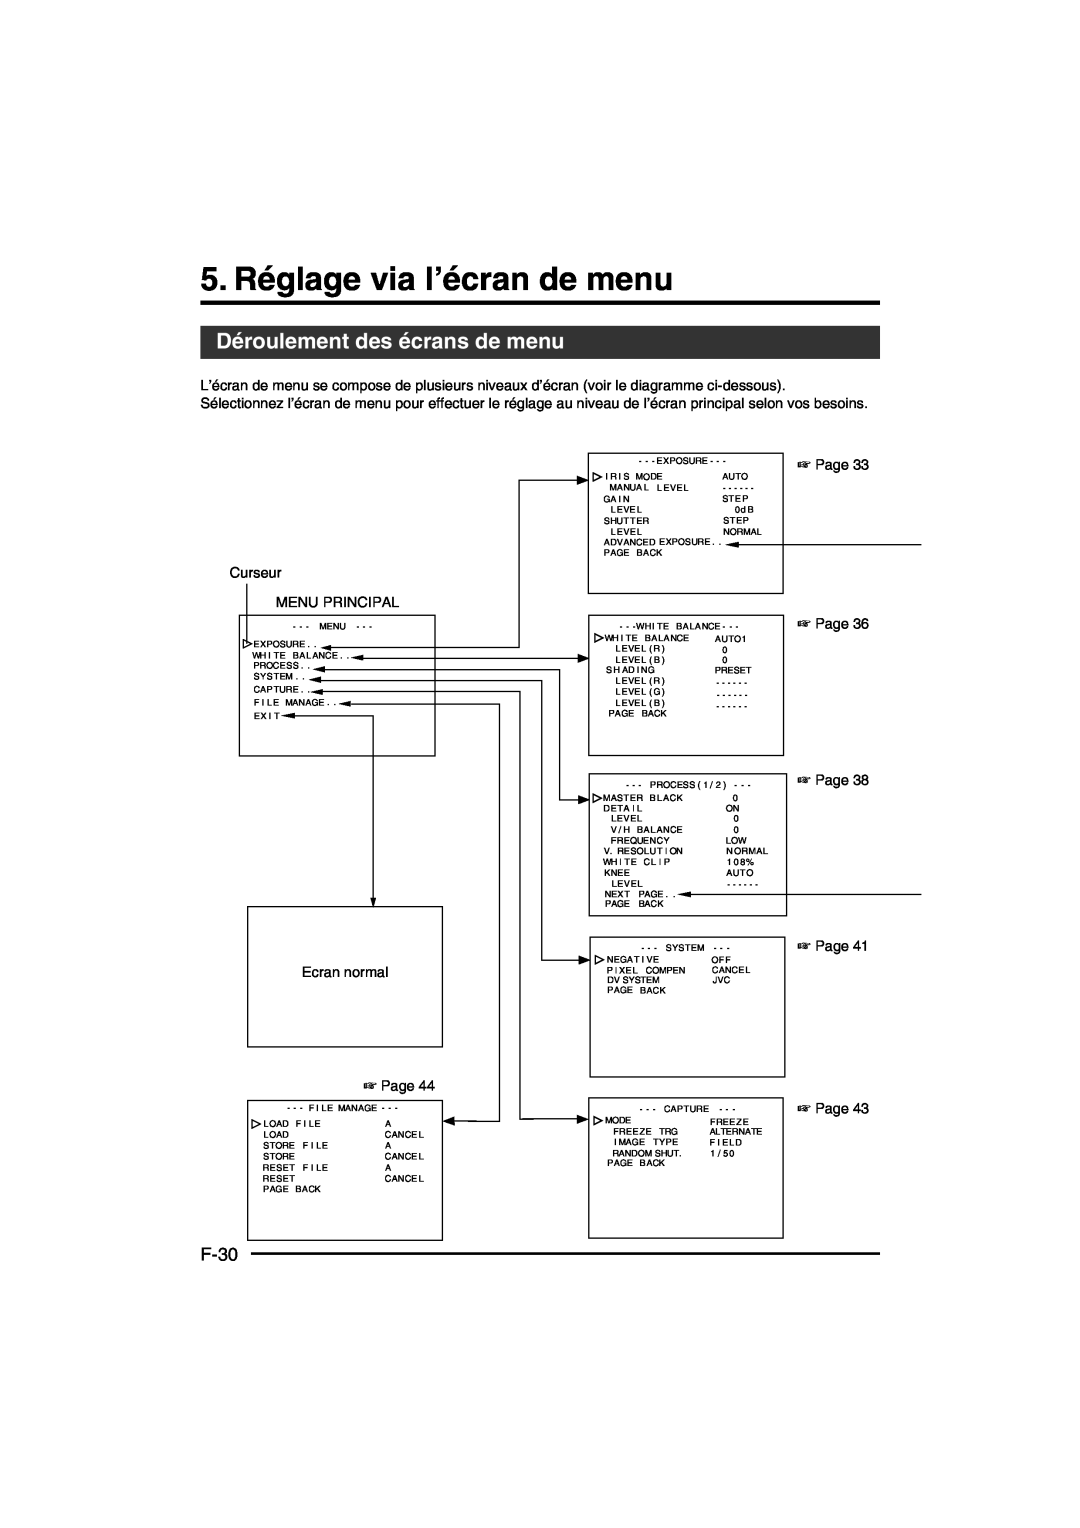 JVC KY-F550E instruction manual 5. Réglage via l’écran de menu, Déroulement des écrans de menu, F-30, Page 